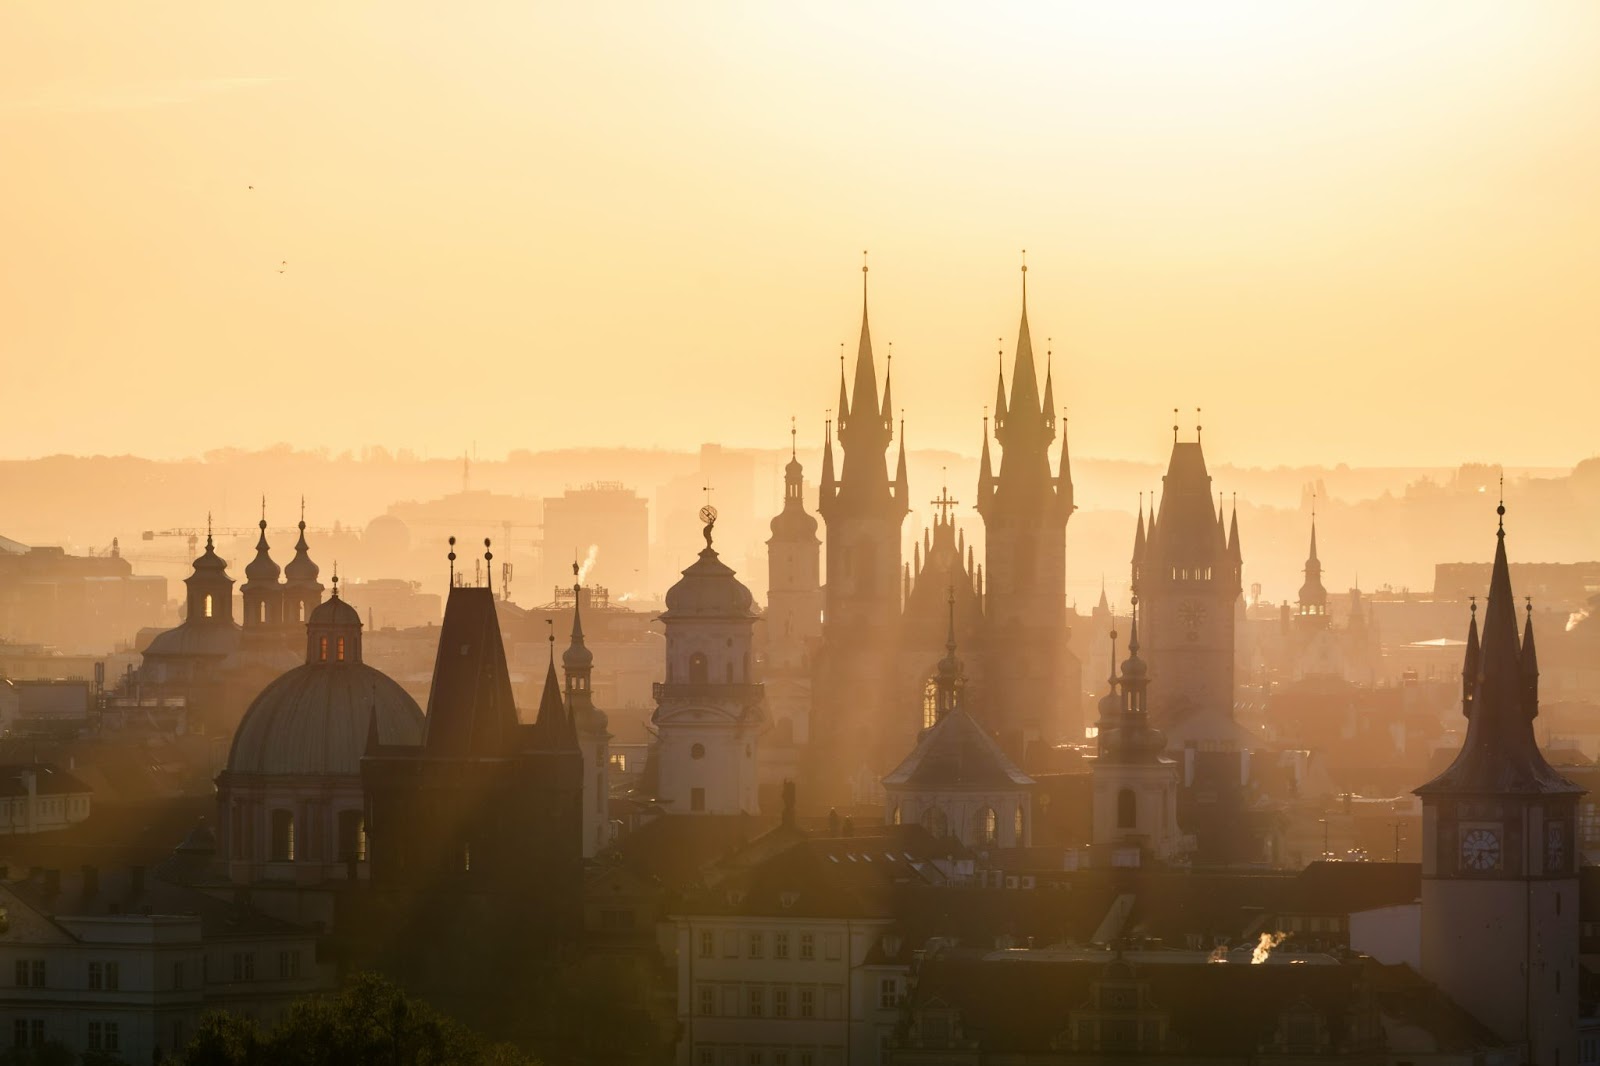 Building spires of Prague at dusk